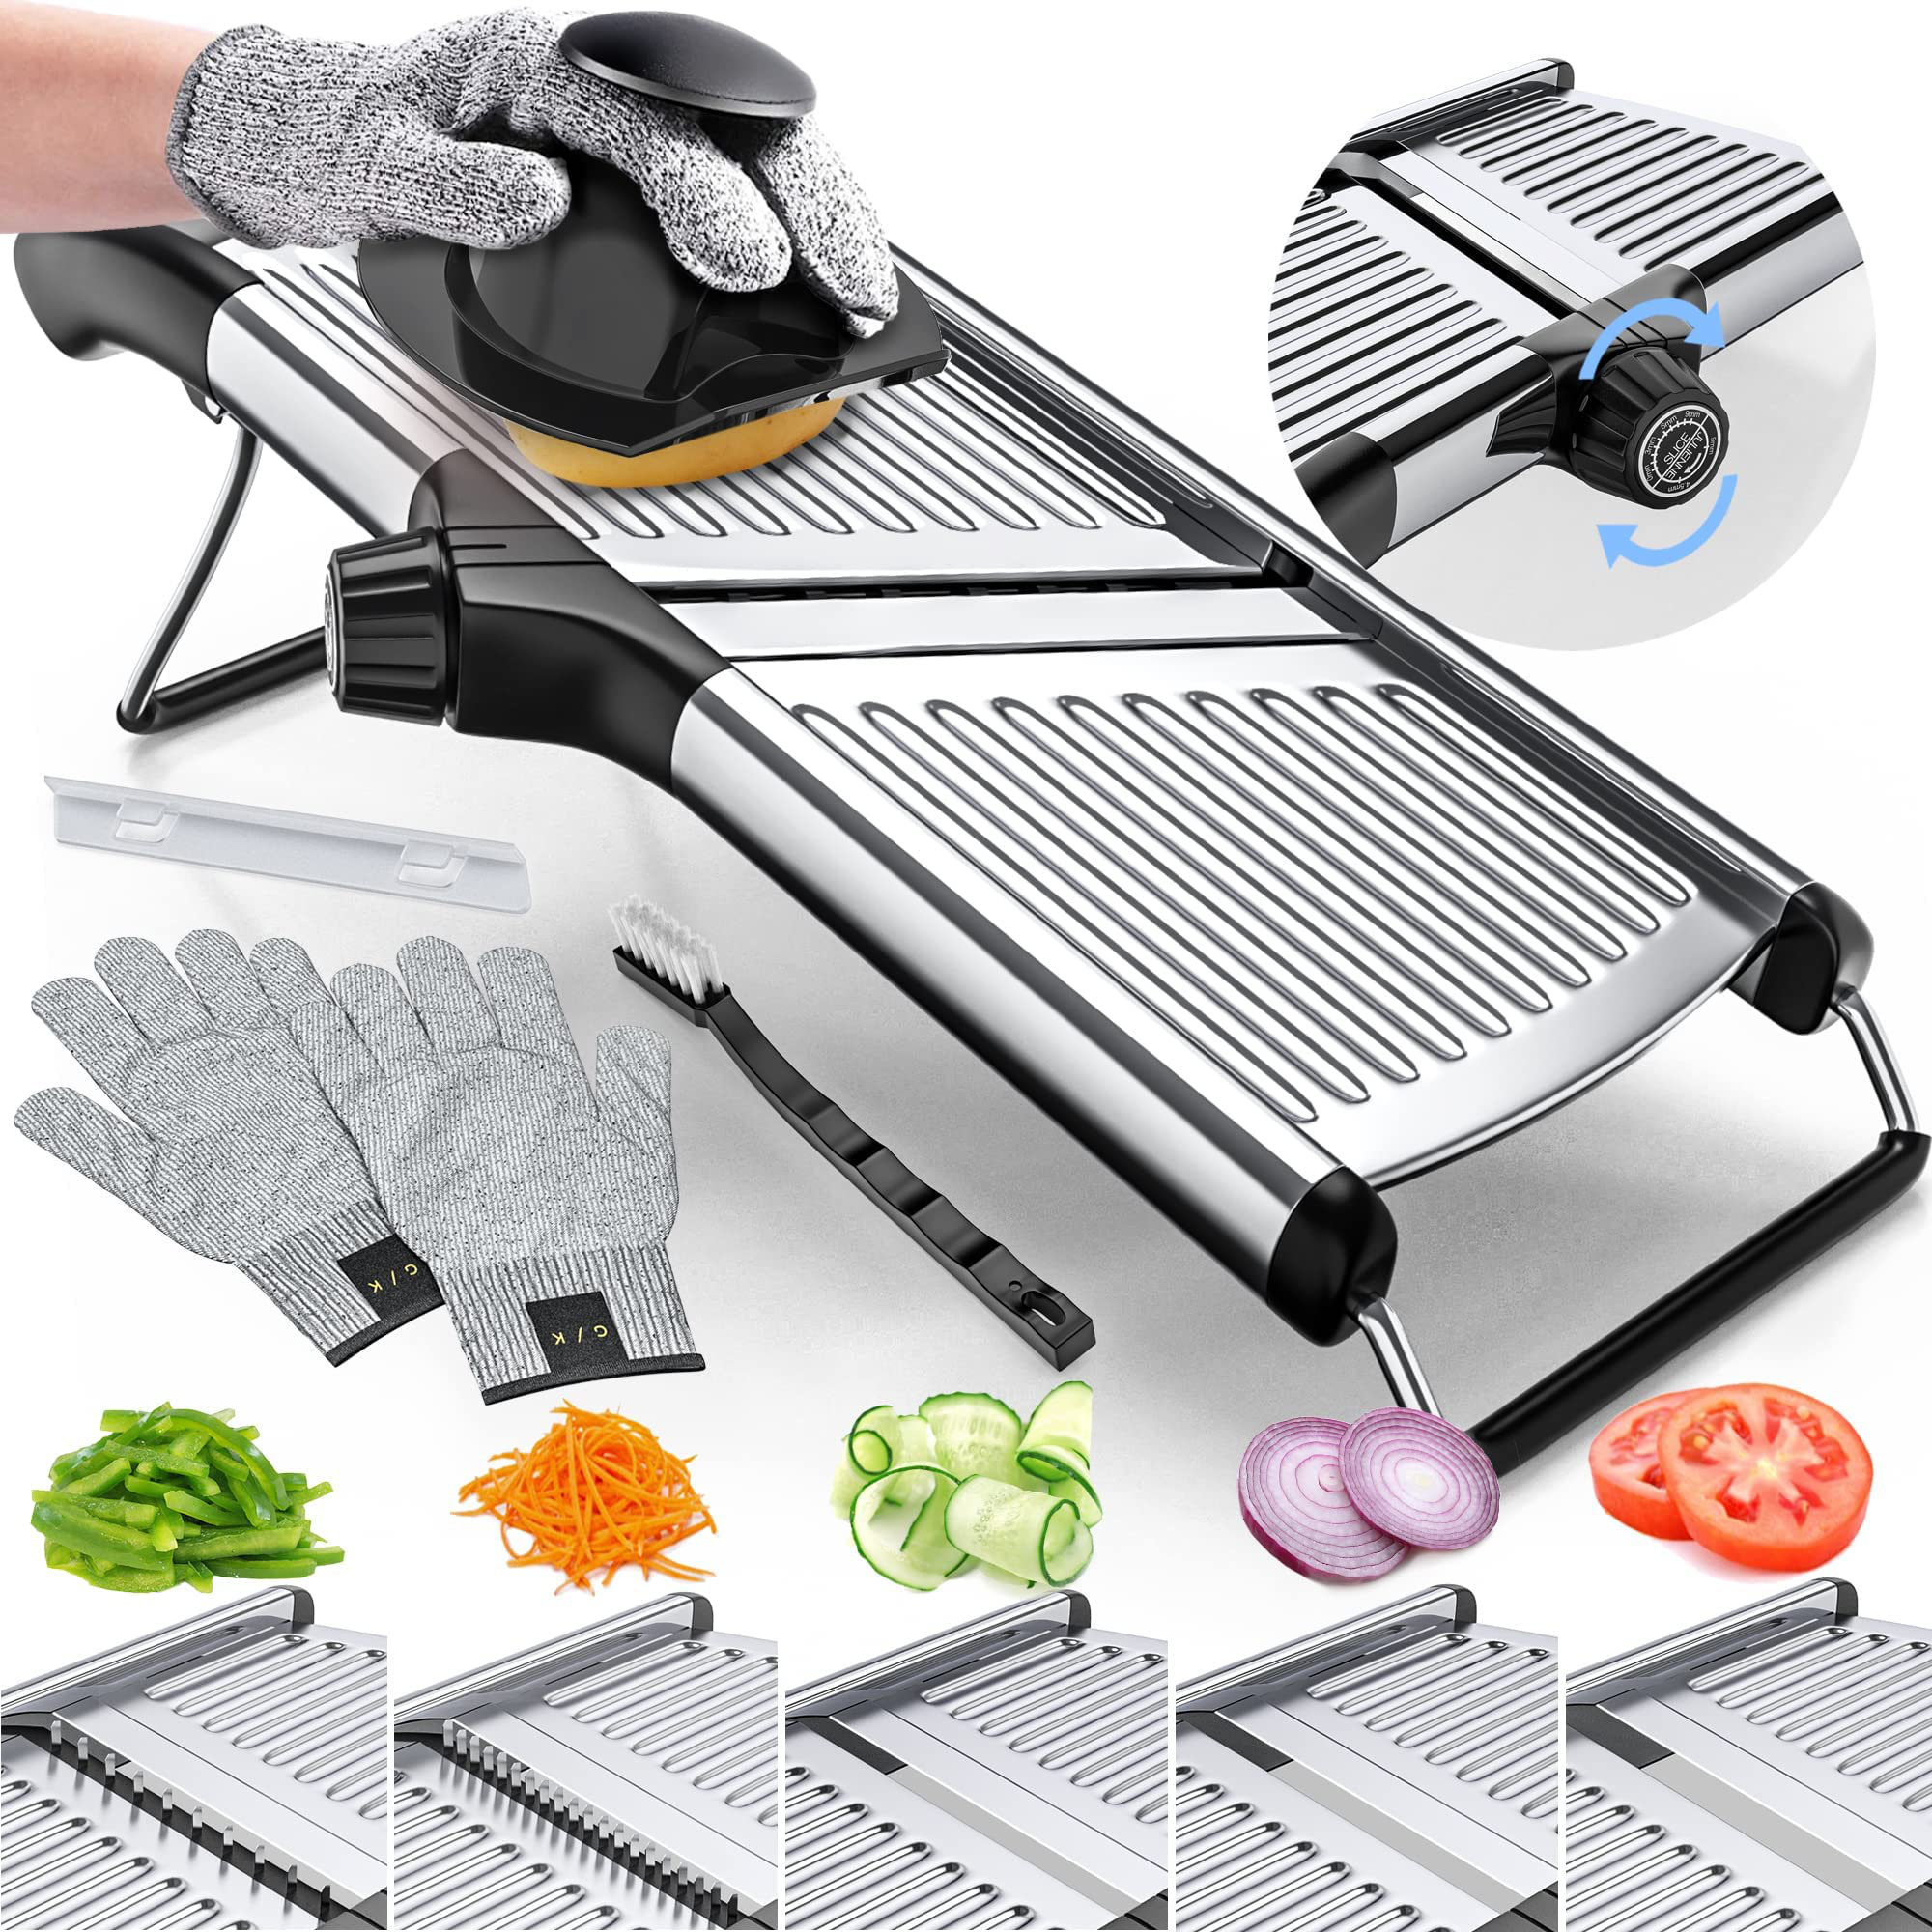 https://assets.wfcdn.com/im/42312397/compr-r85/2436/243611453/adjustable-mandoline-slicer-for-kitchen-vegetable-chopper-food-chopper-vegetable-slicer-potato-slicer-mandolin-potato-cutter-stainless-steel-including-one-pair-cut-resistant-gloves.jpg